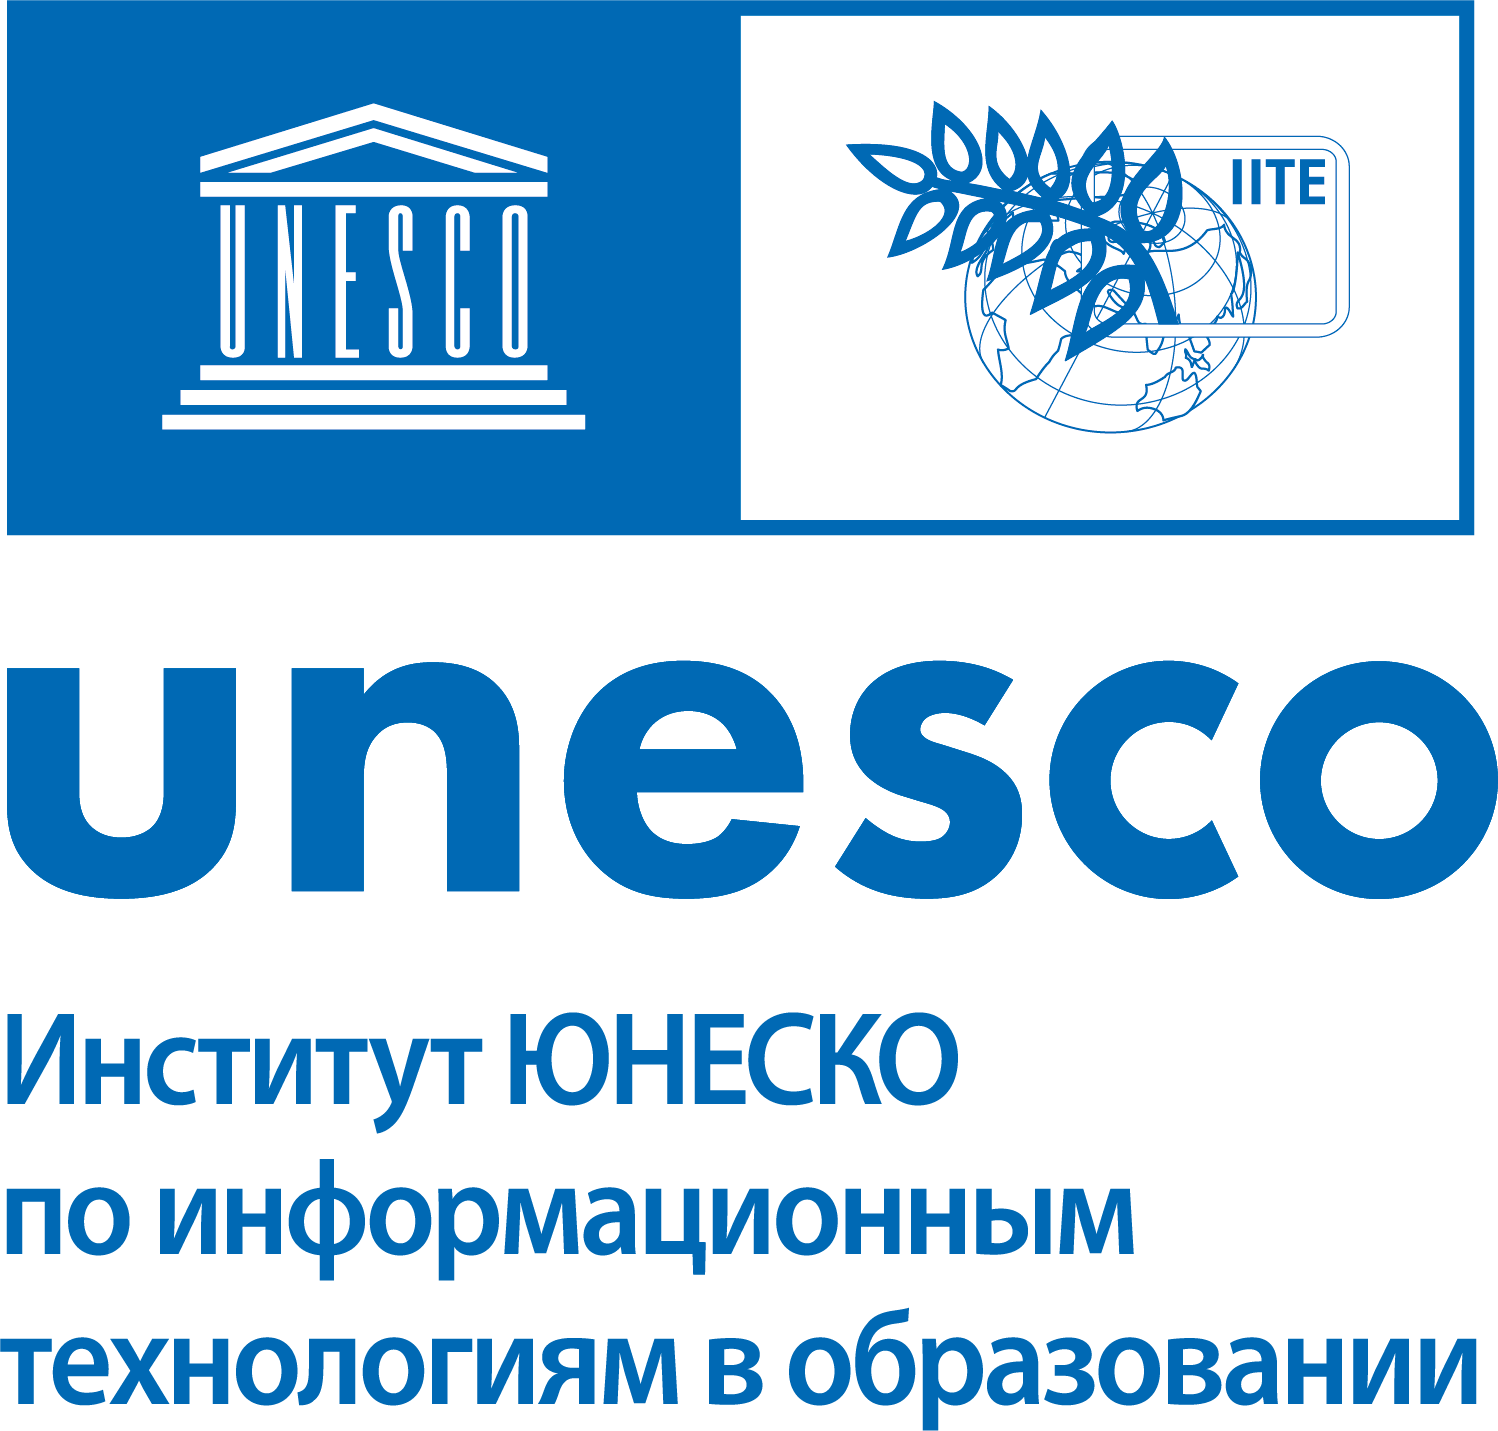 ИИТО ЮНЕСКО